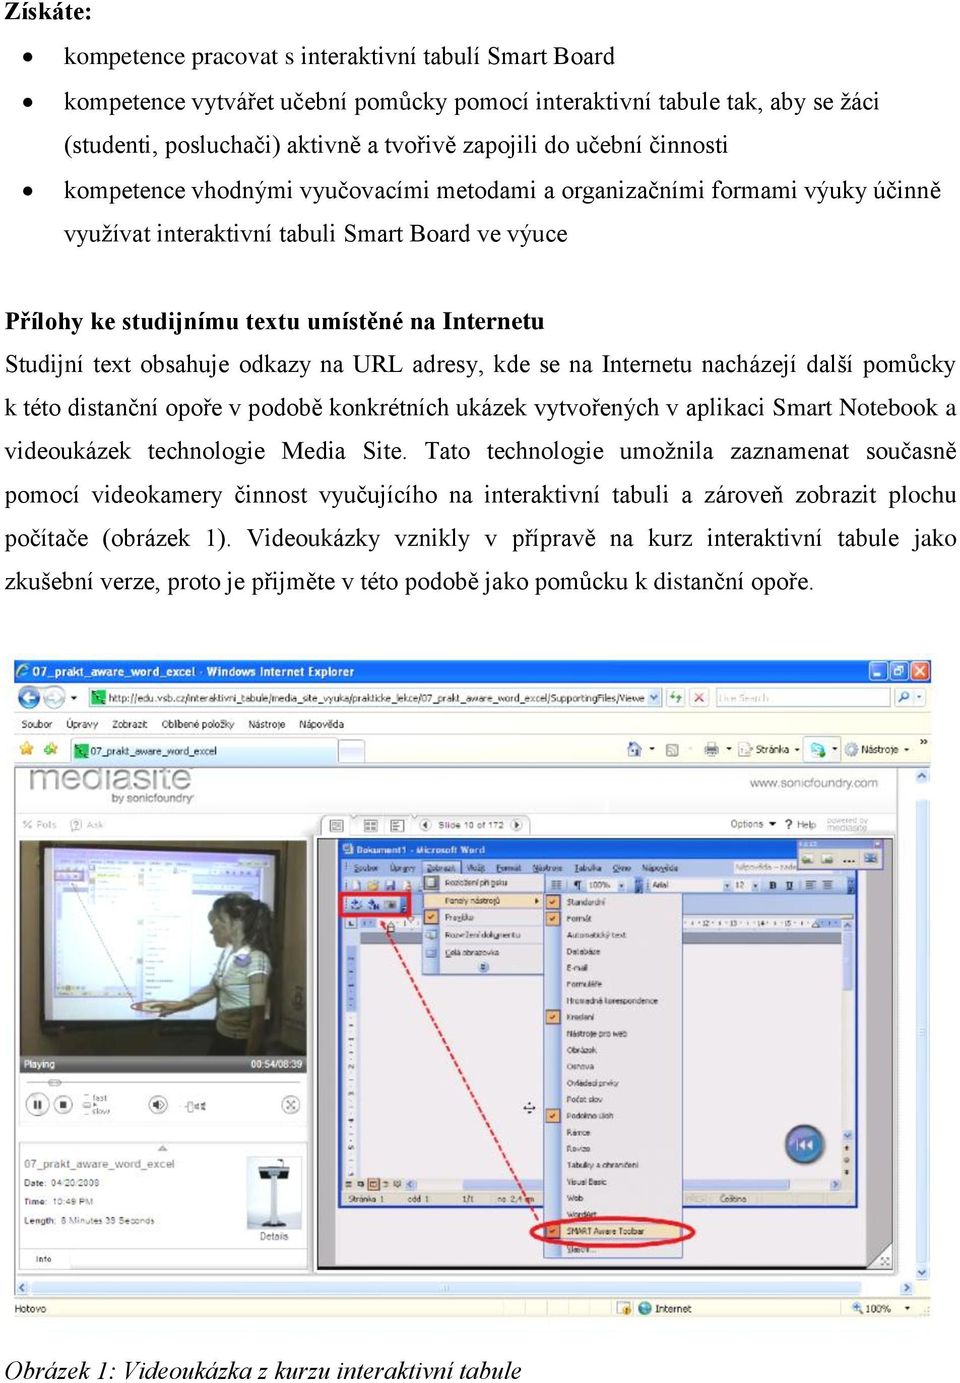 Studijní text obsahuje odkazy na URL adresy, kde se na Internetu nacházejí další pomůcky k této distanční opoře v podobě konkrétních ukázek vytvořených v aplikaci Smart Notebook a videoukázek